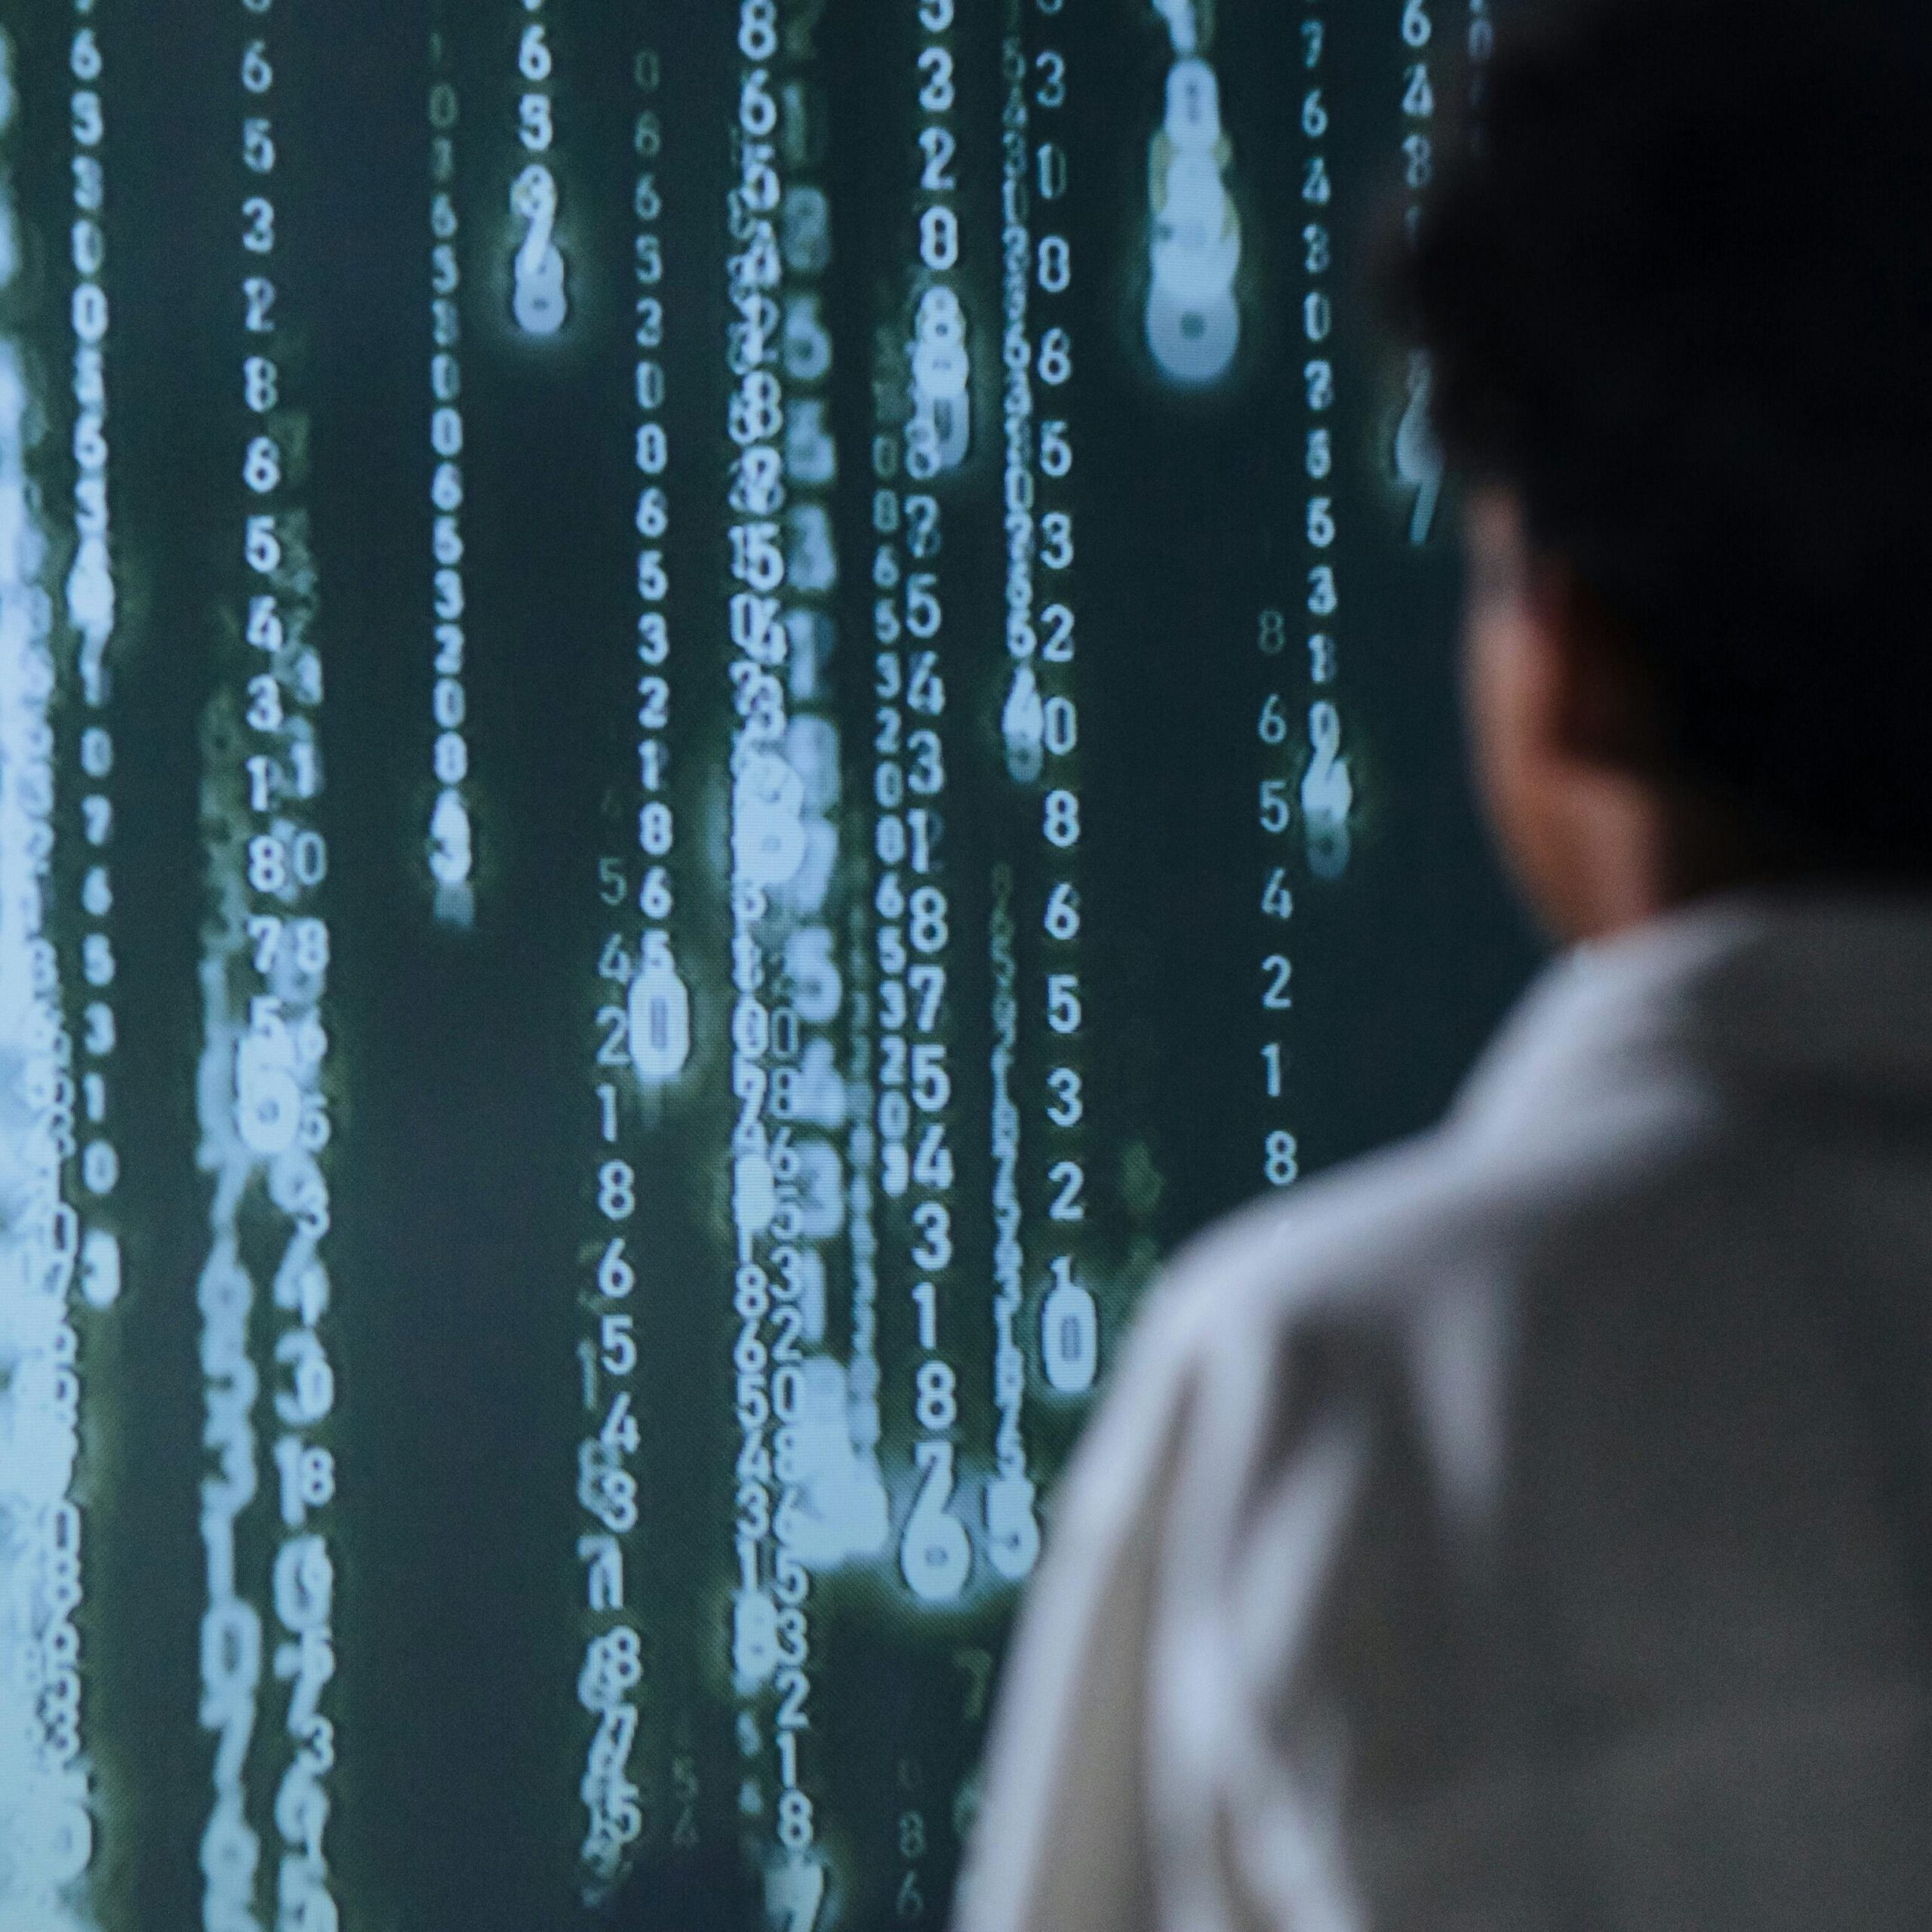 Eine Person blickt auf eine Matrix-artige Wand mit Informationen.